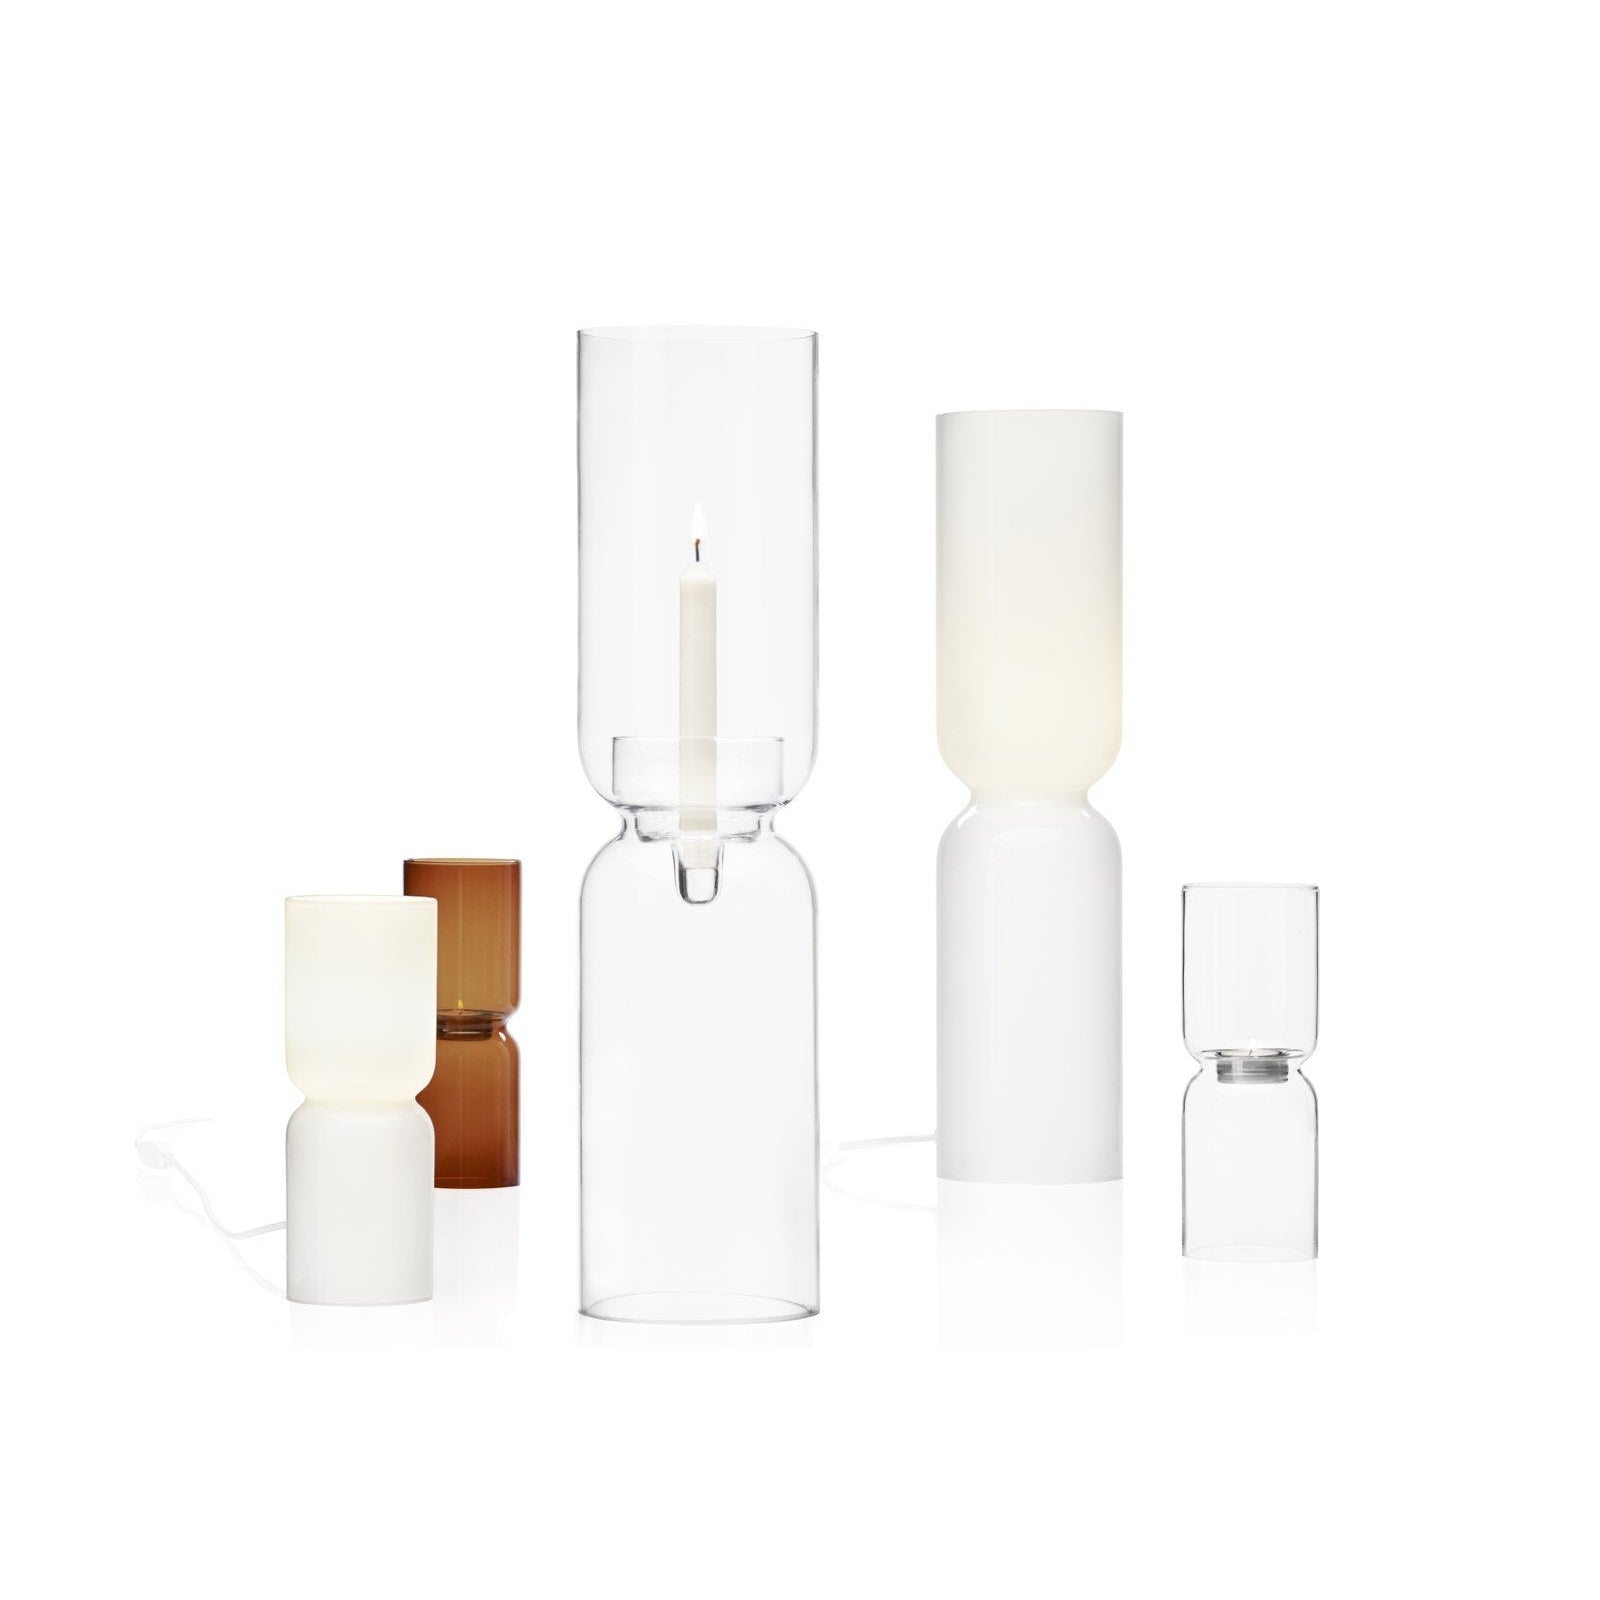 Iittala Lantern Candle Holder White, 60cm